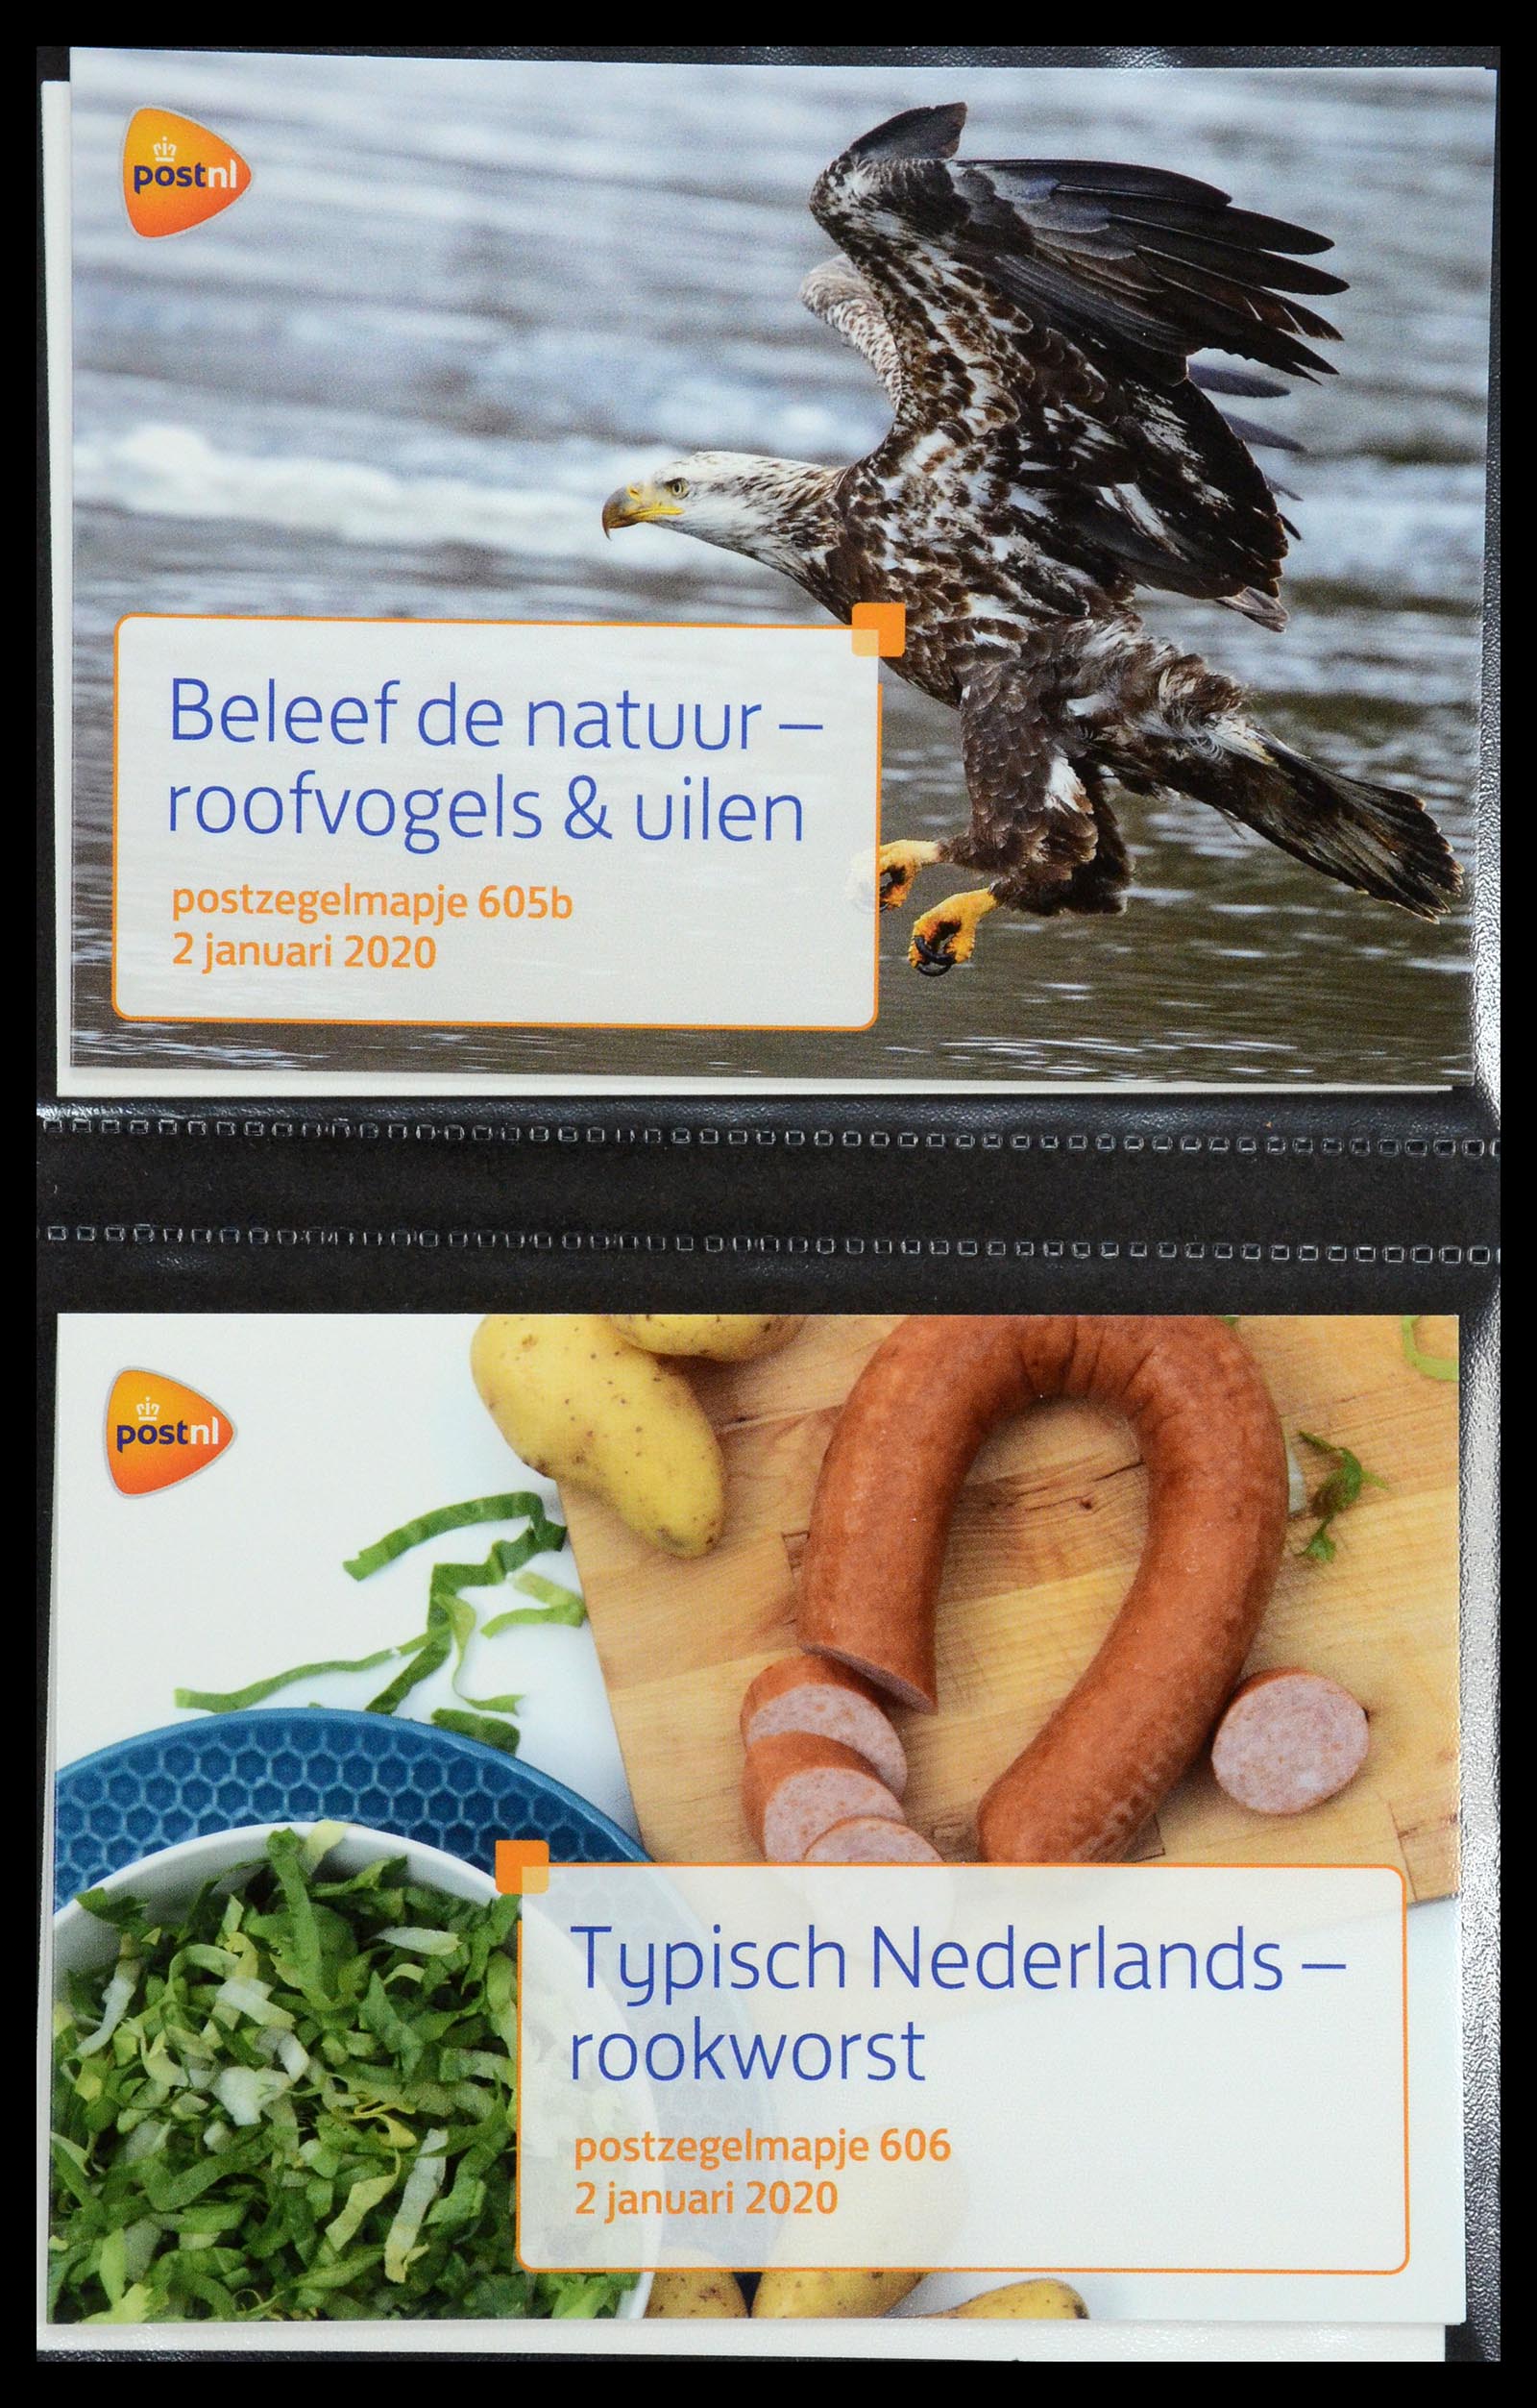 35144 367 - Stamp Collection 35144 Netherlands PTT presentation packs 1982-2021!